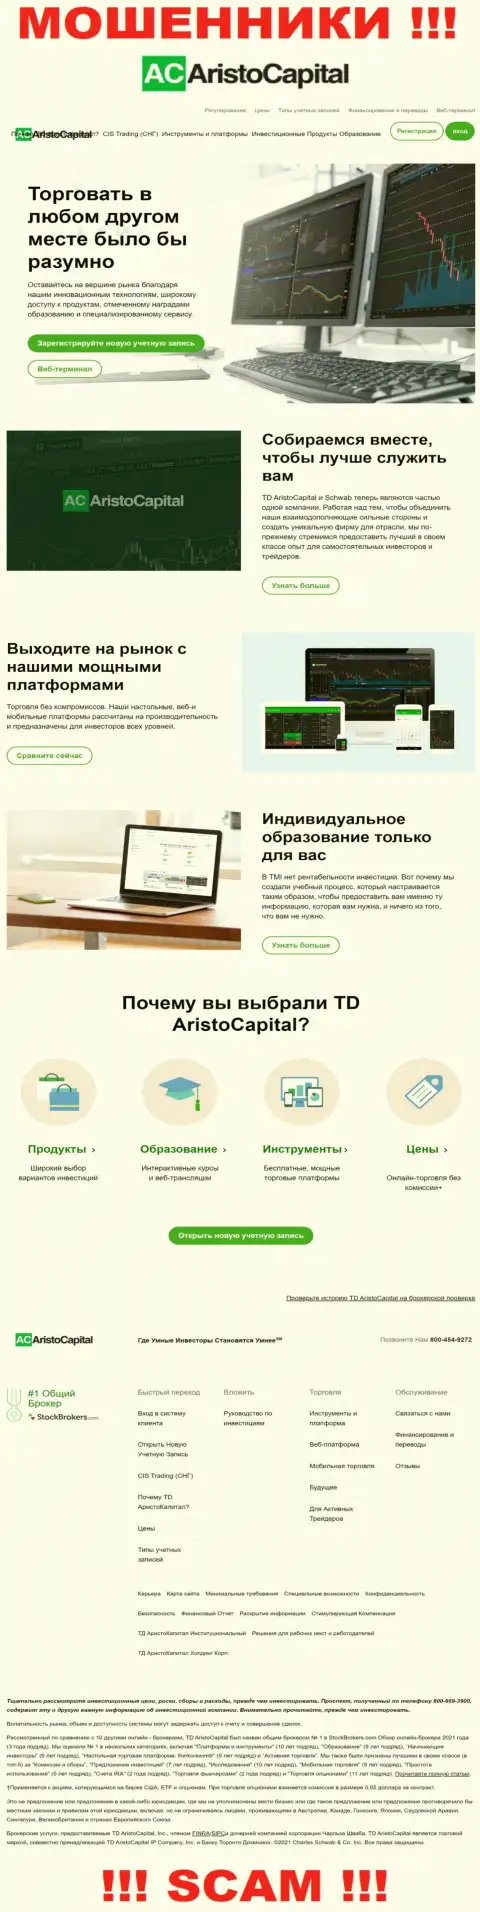 Обзор официального интернет-портала шулеров АристоКапитал